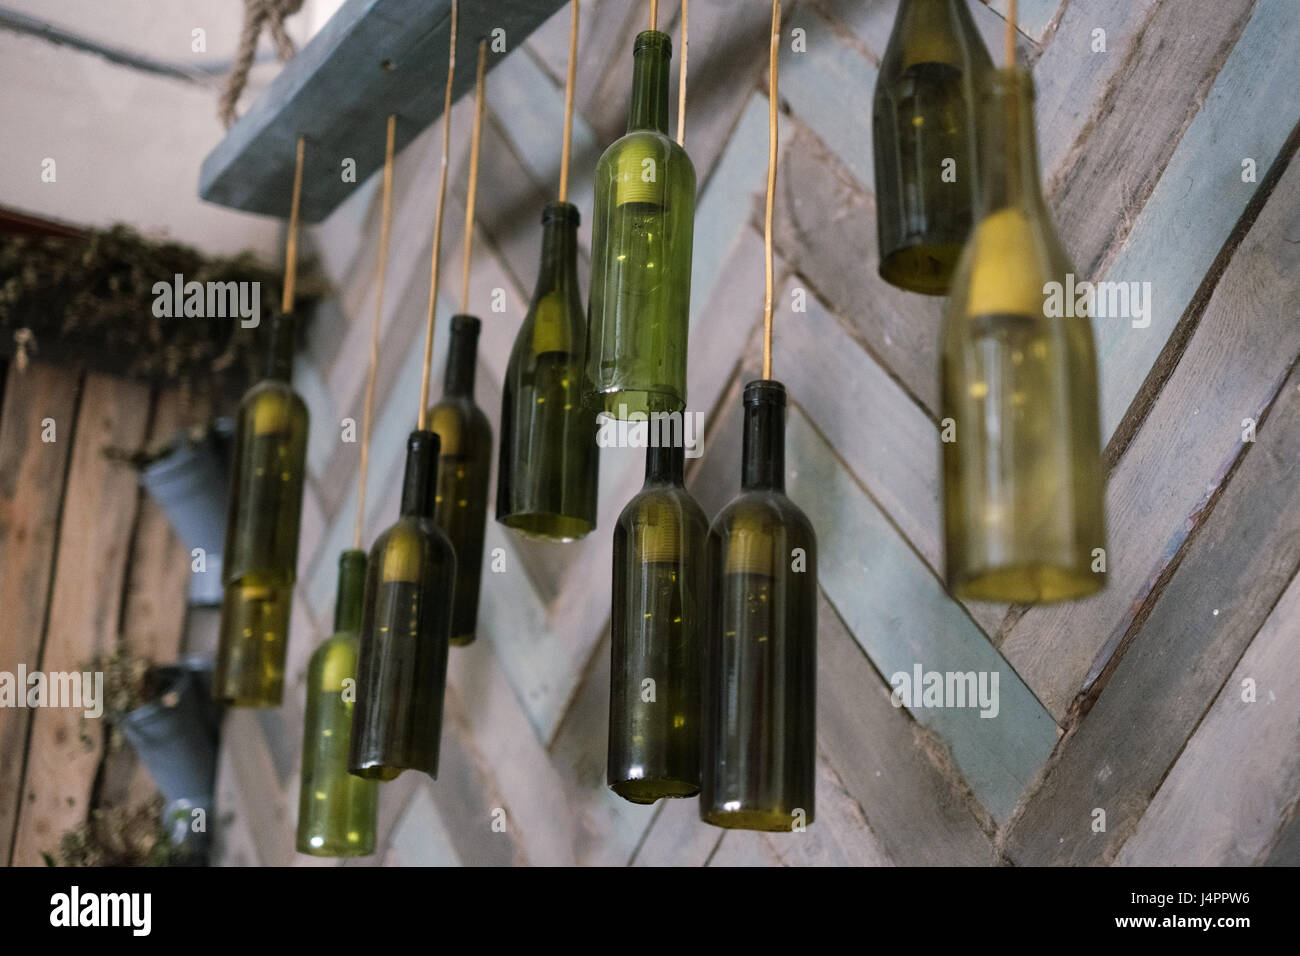 Pared de botellas colgantes fotografías imágenes de alta resolución Alamy